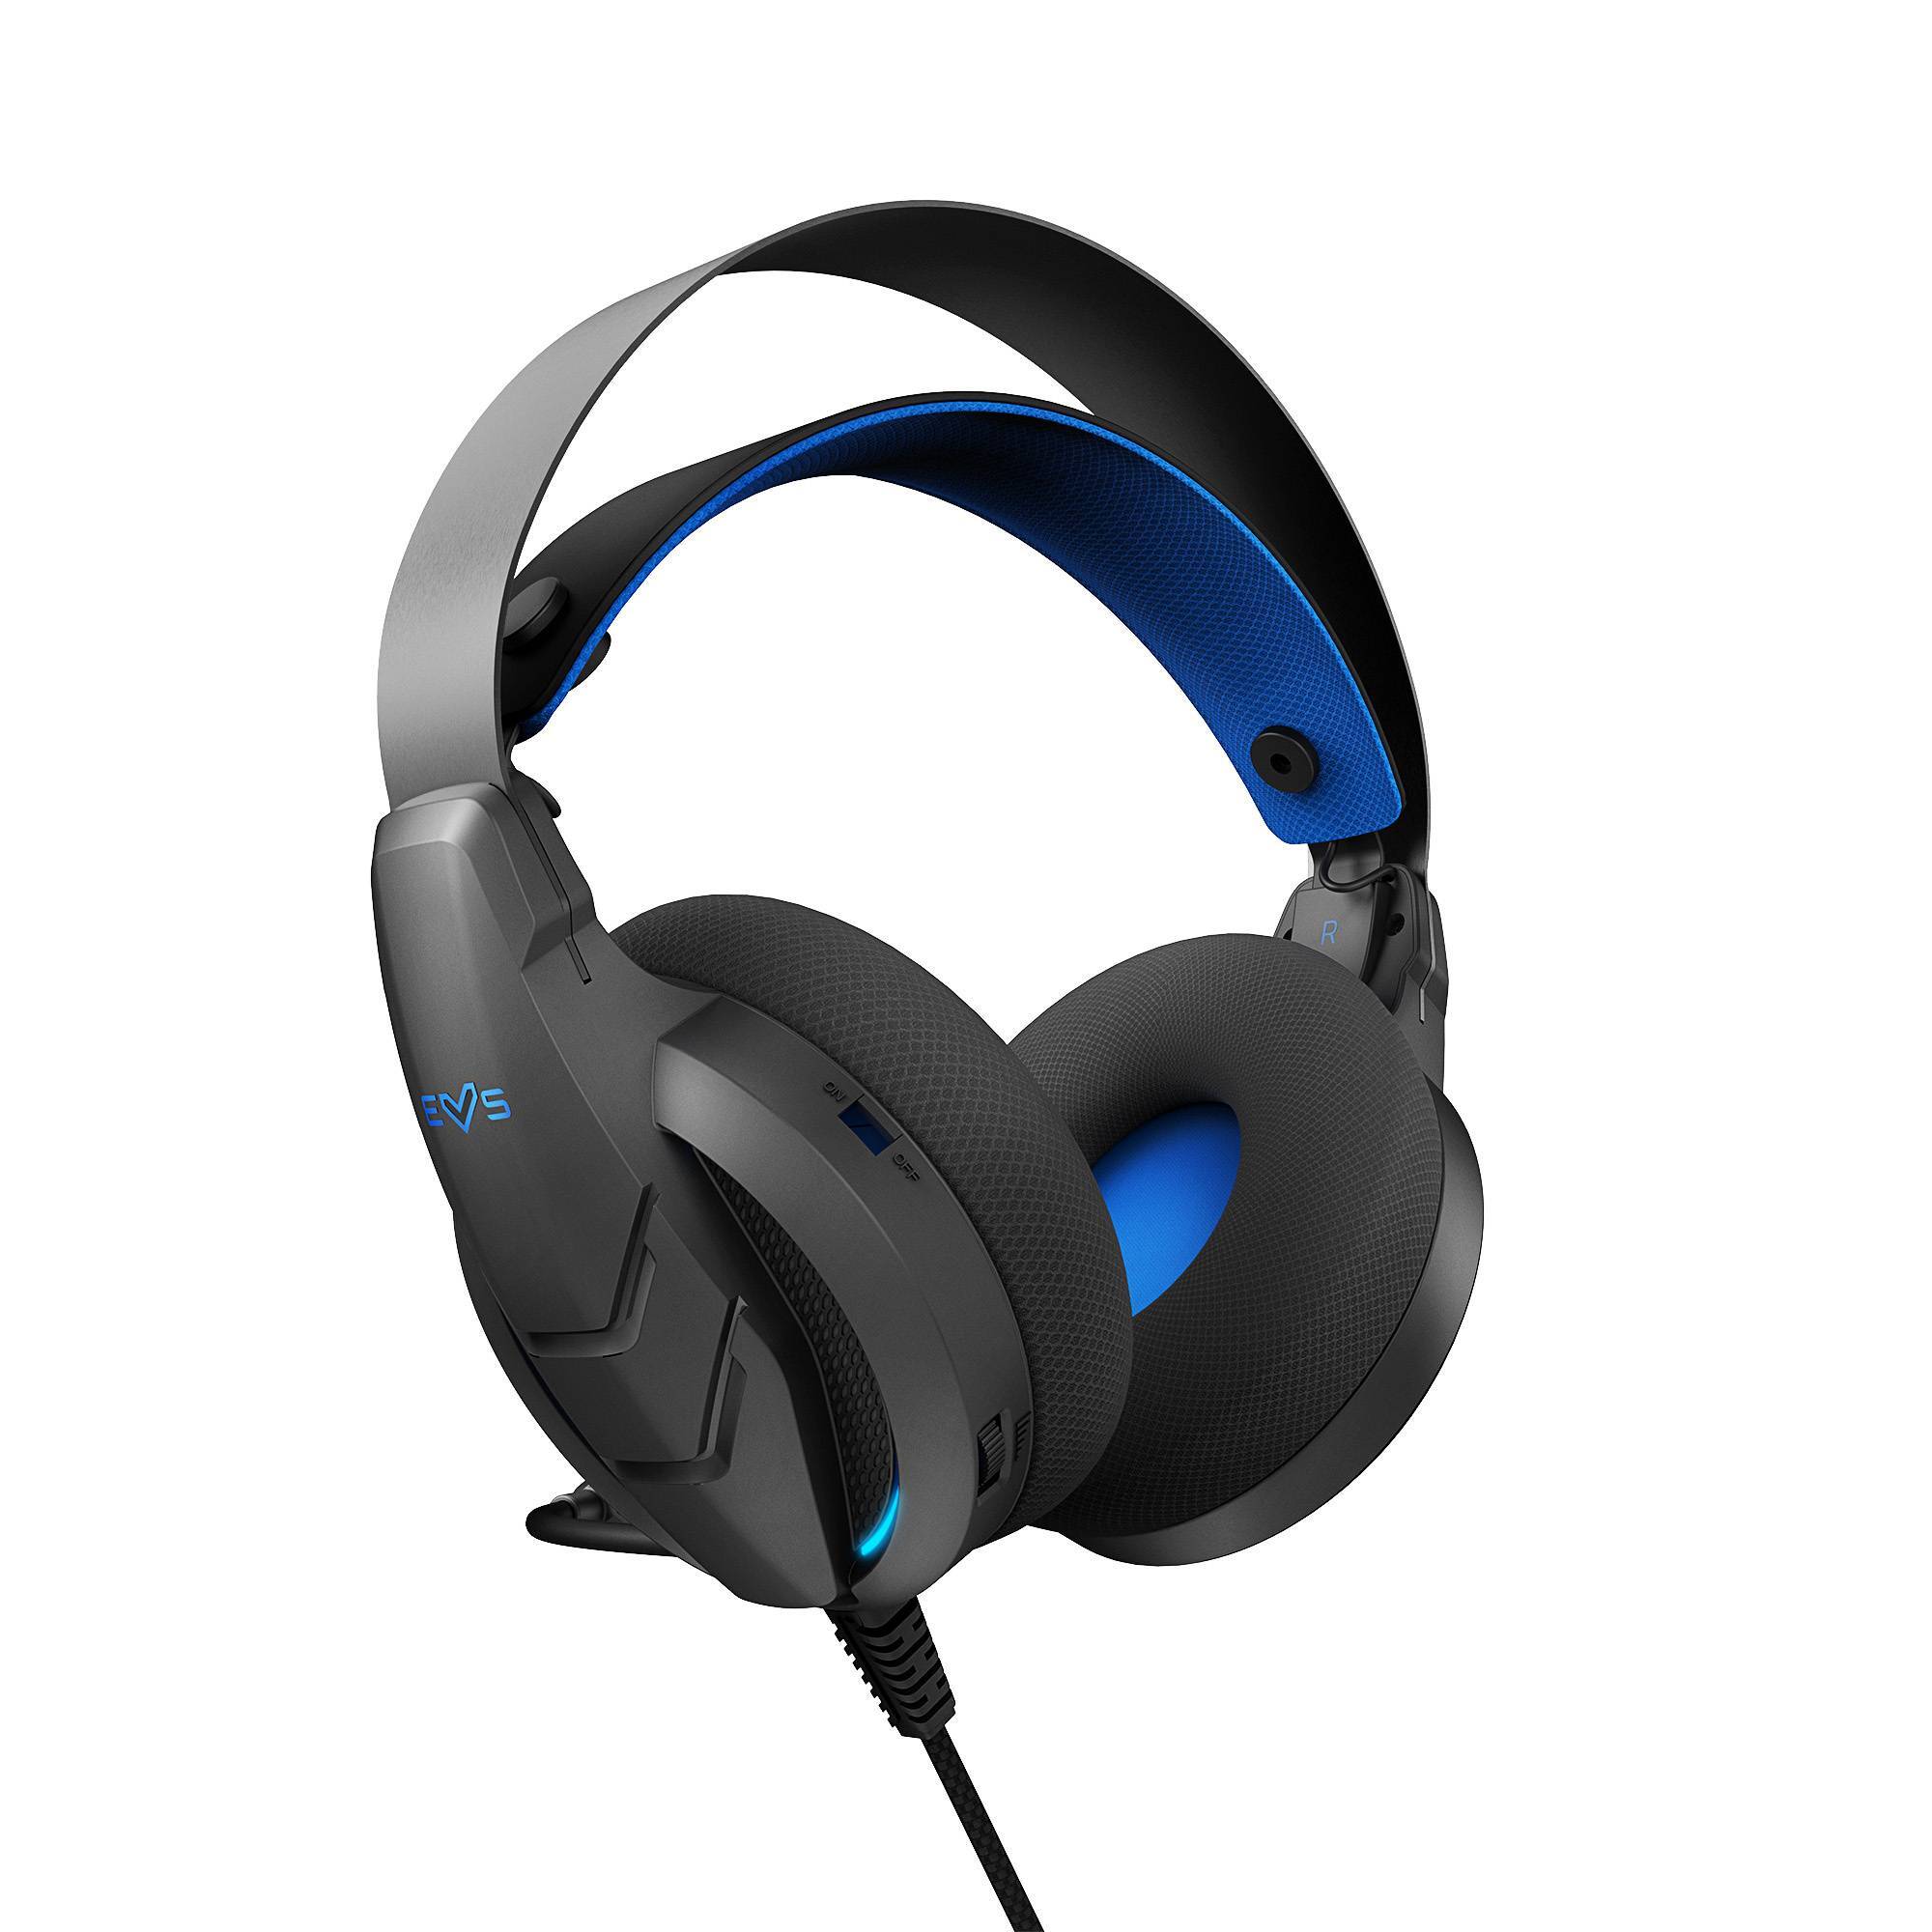 Gamer headset com design ergonómico e acabamentos metálicos